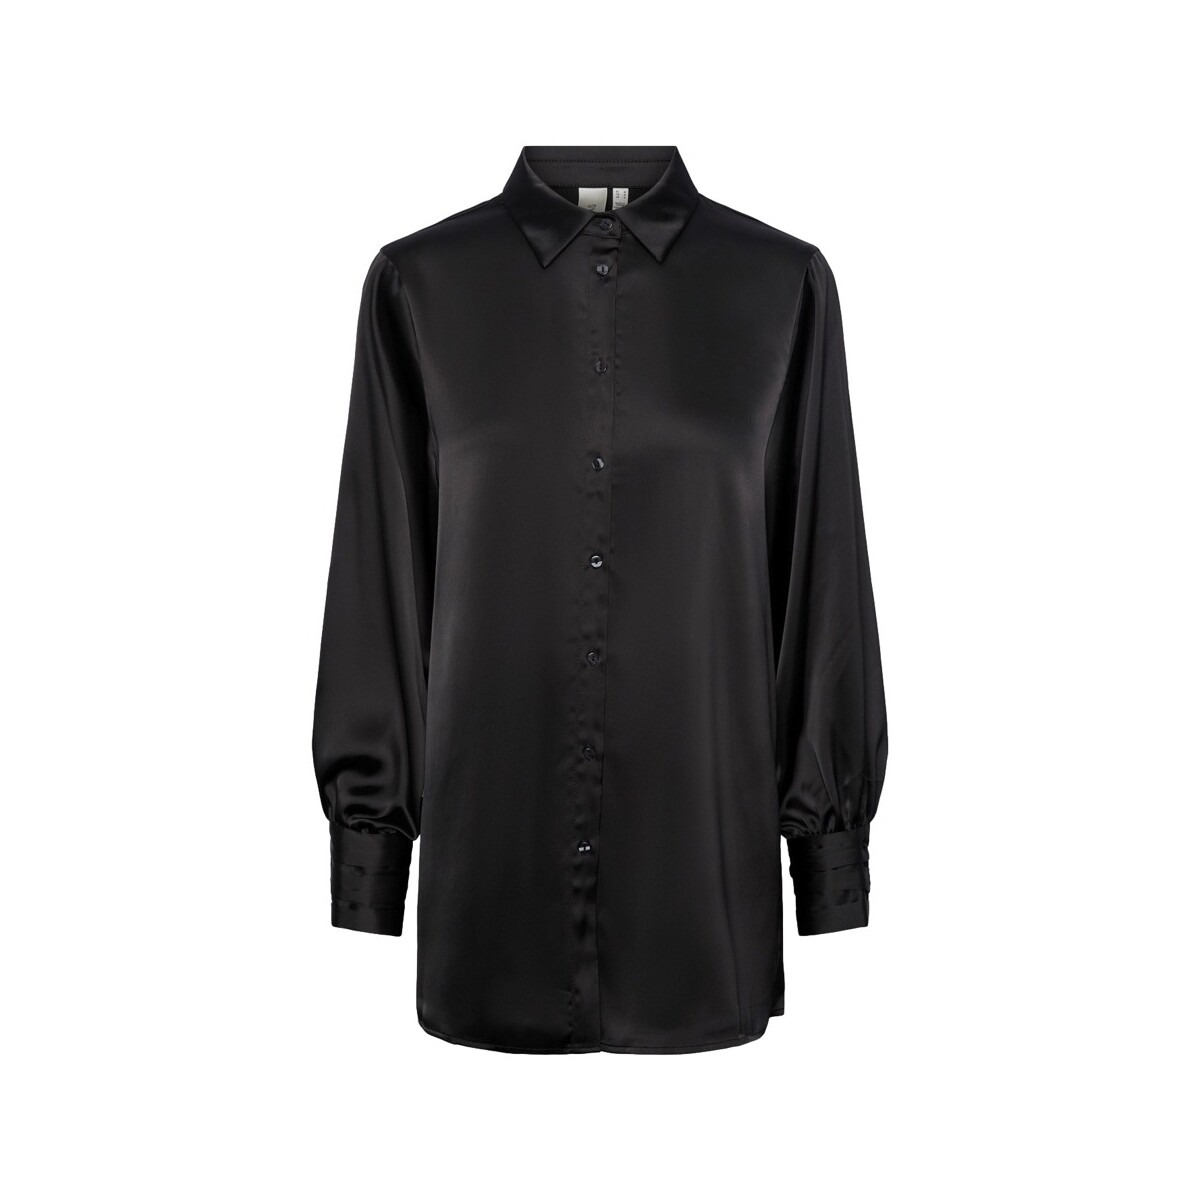 Vêtements Femme Tops / Blouses Y.a.s YAS Noos Pella Shirt L/S - Black Noir